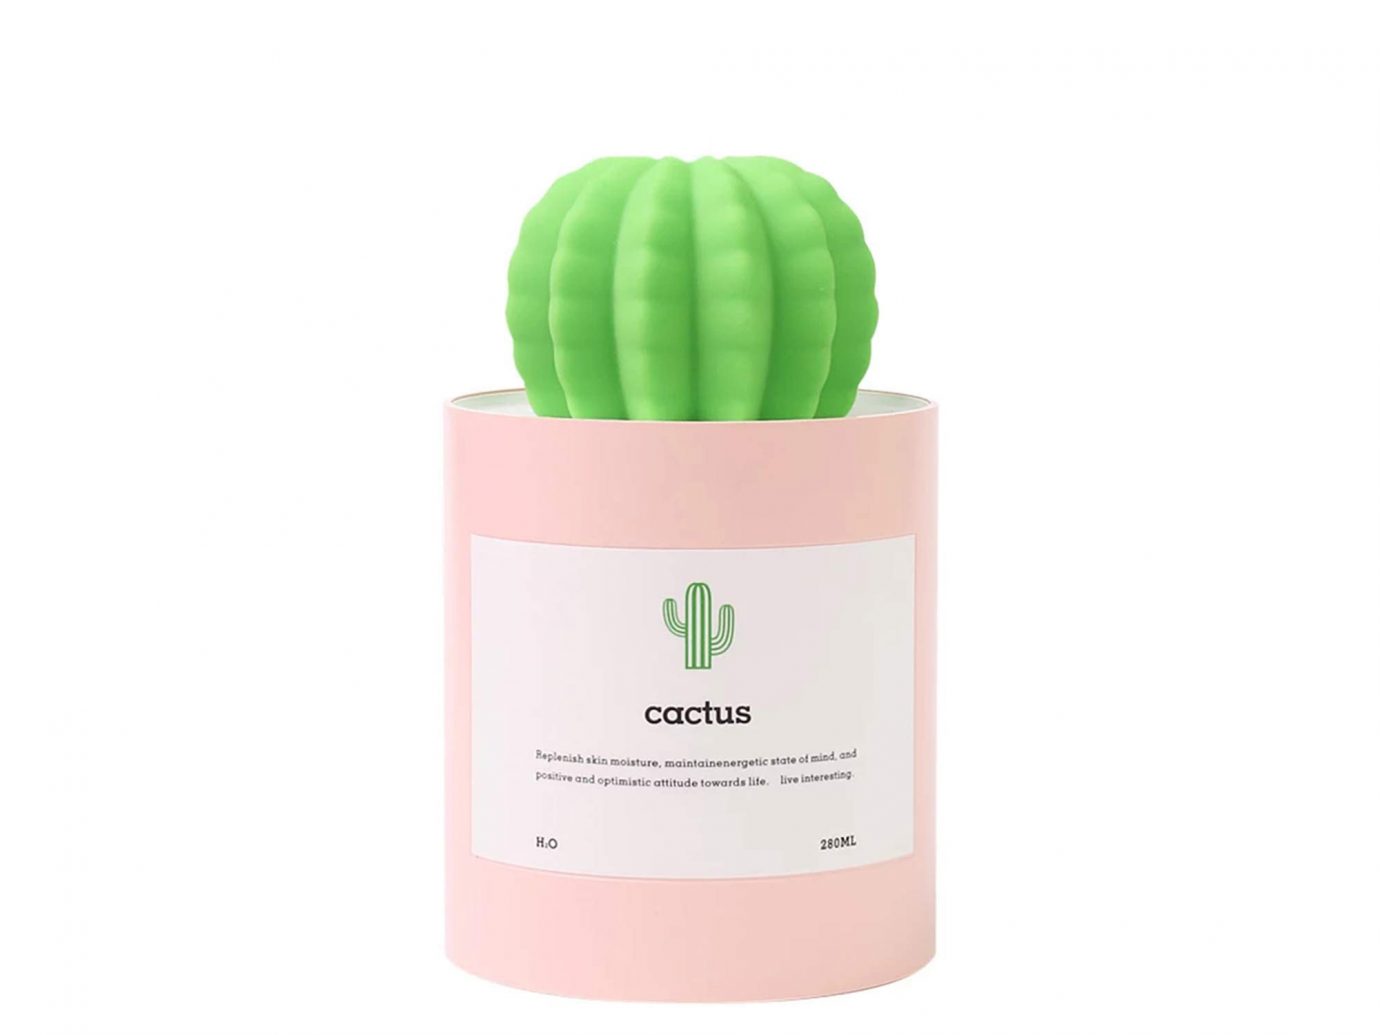 Aoloda Mini Cactus Humidifier